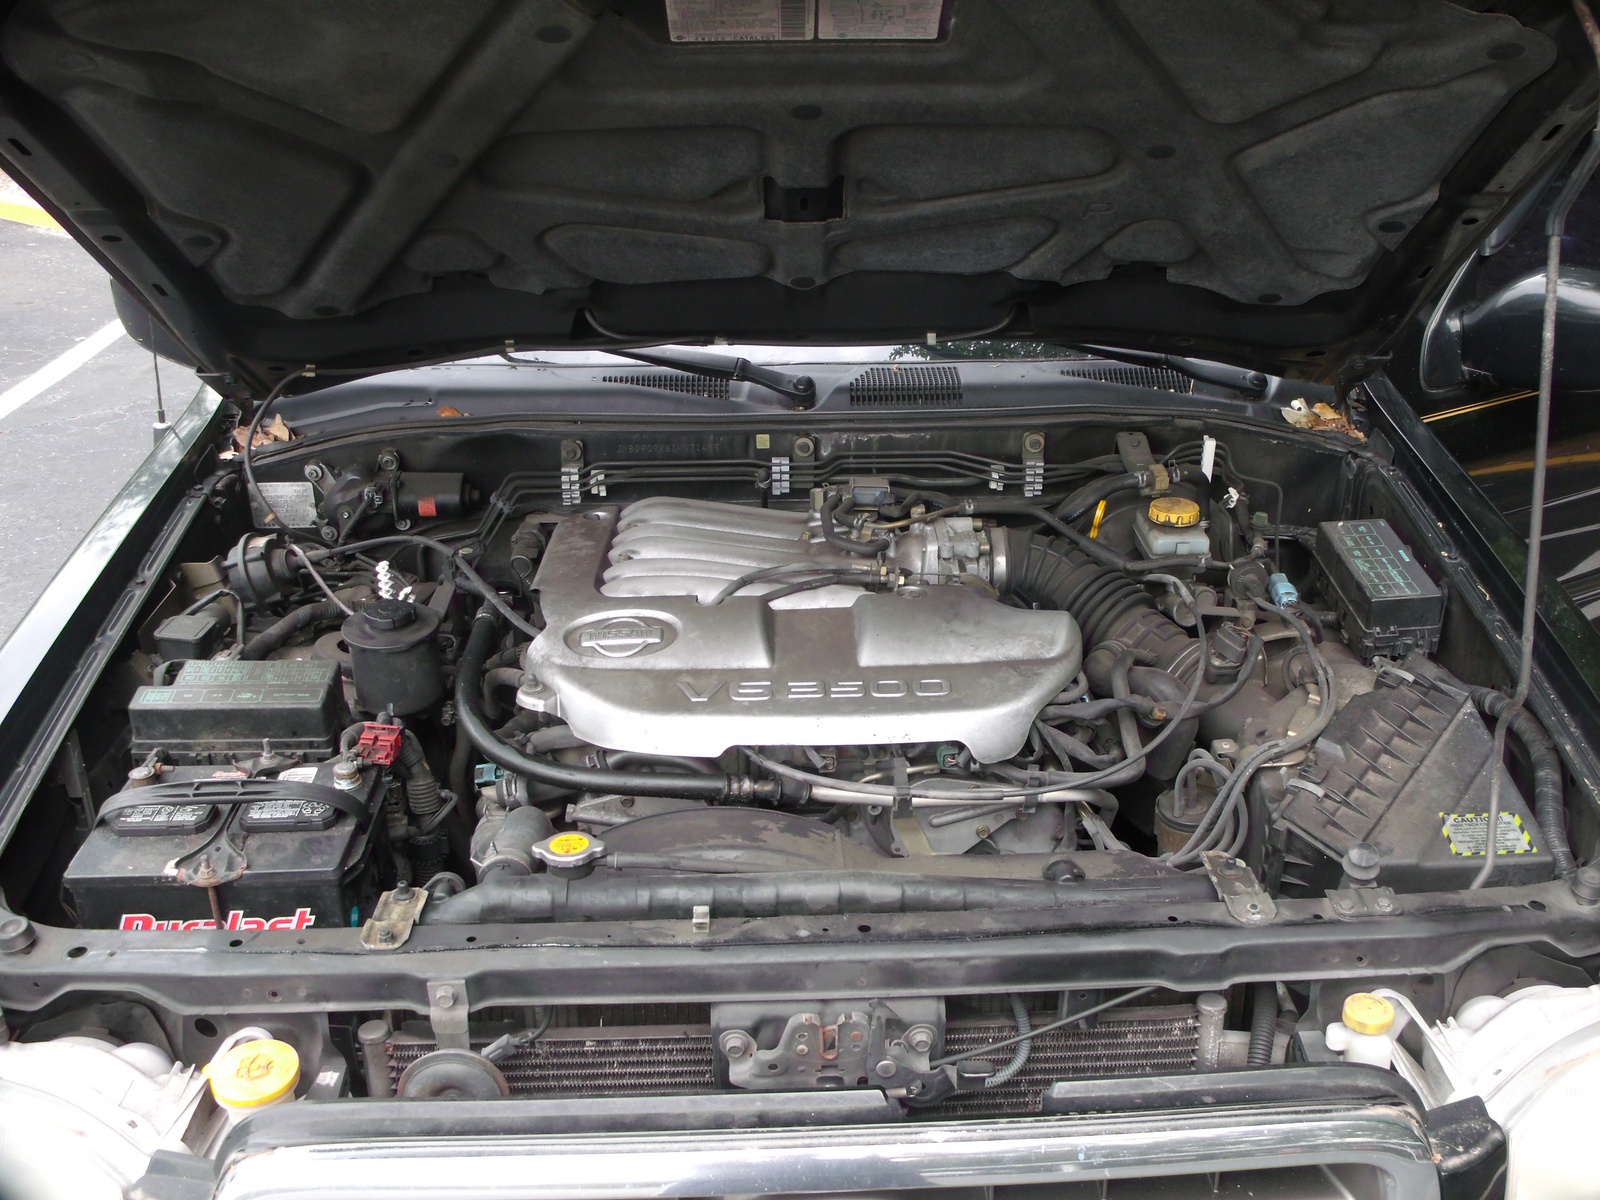 2001 Nissan pathfinder engine #2